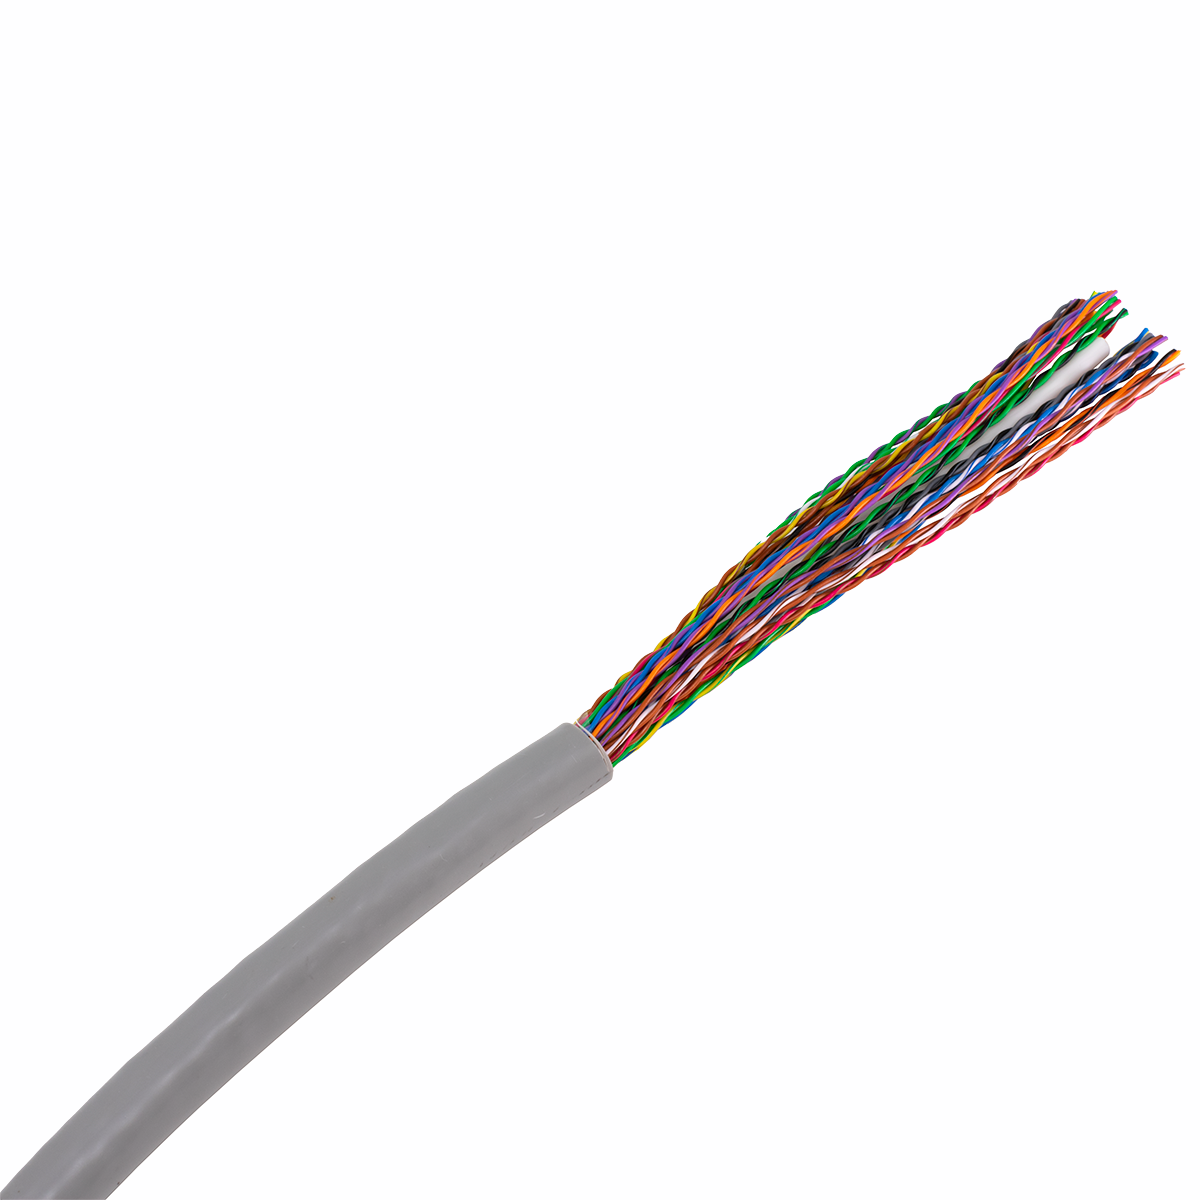 Bulk Cut 25 Pair CAT5E PVC Cable (1 foot)